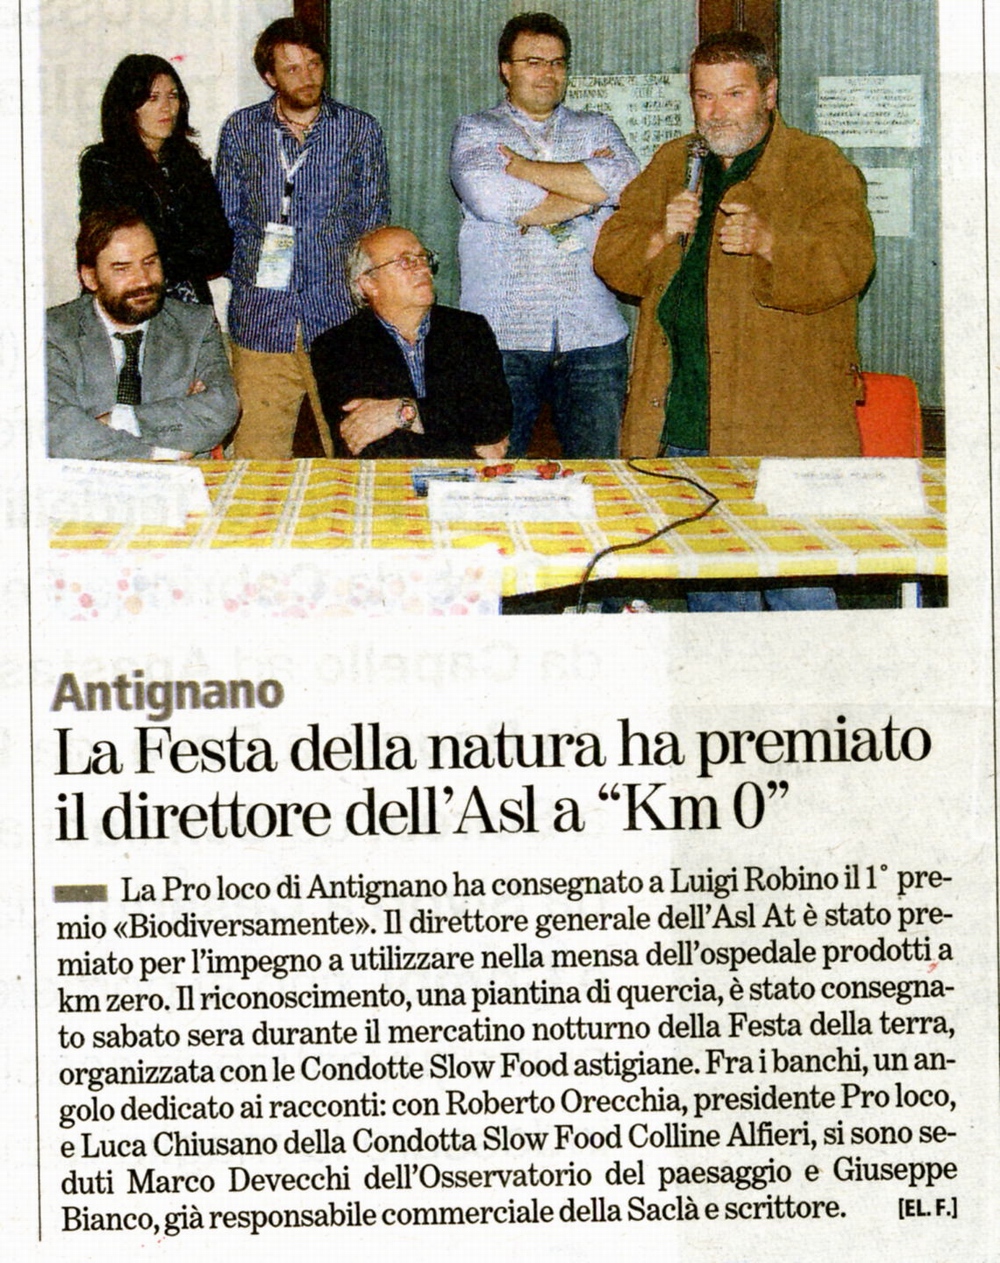 Rassegna stampa della Festa della Natura (Antignano 29 maggio 2010) - La Stampa (martedì 1 giugno 2010)